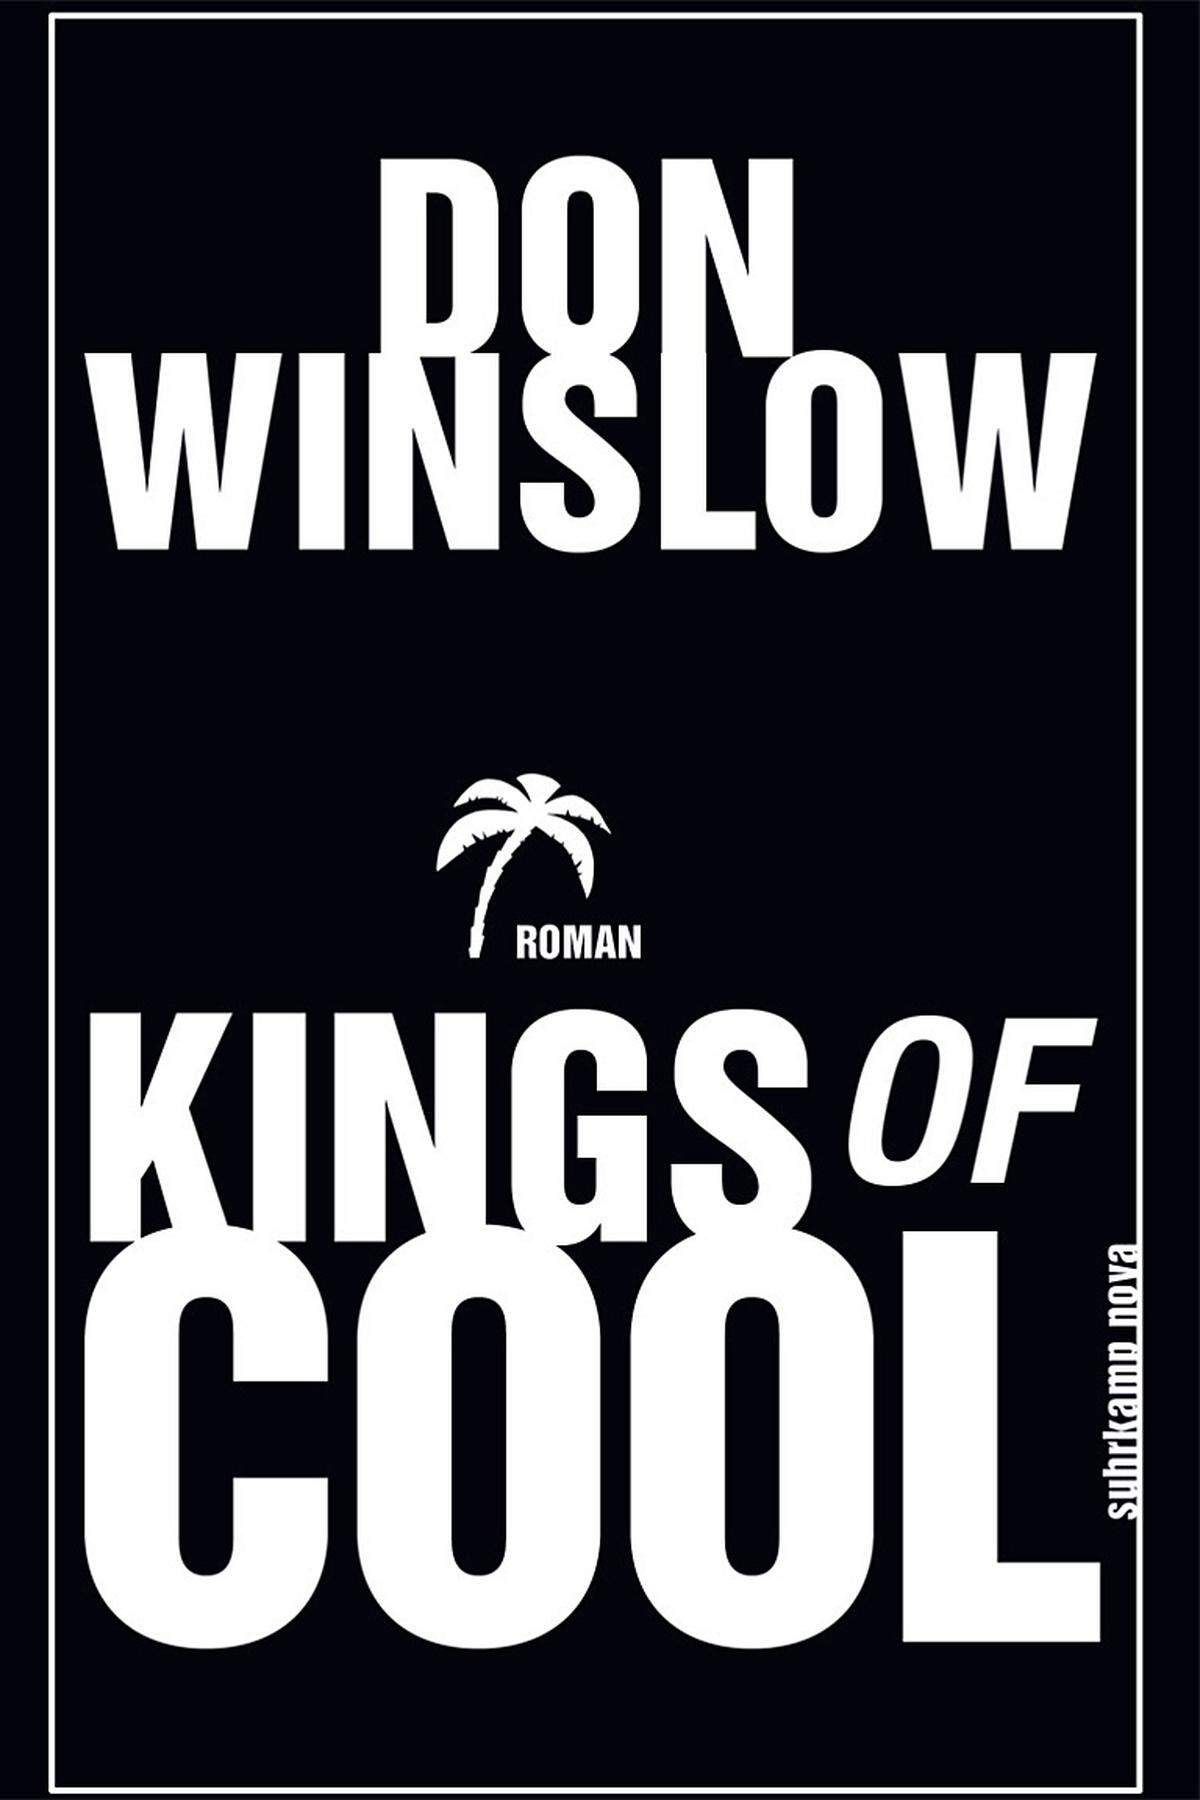 US-Autor Don Winslow hat einen Bildungsroman der anderen Art geschrieben. Sein Drogendrama "Kings of Cool" ist Thriller und Nachschlagewerk in einem - und macht süchtig. Thematische Ernsthaftigkeit und verspielter Sprachwitz wechseln einander mitunter rasant ab und gehen nicht selten ineinander auf. Es ist wie ein 349-seitiger Hochseilakt, bei dem Winslow niemals die Trittsicherheit verliert. Don Winslow: "Kings of Cool" übersetzt von Conny Lösch, Suhrkamp, 349 Seiten, 20,60 Euro